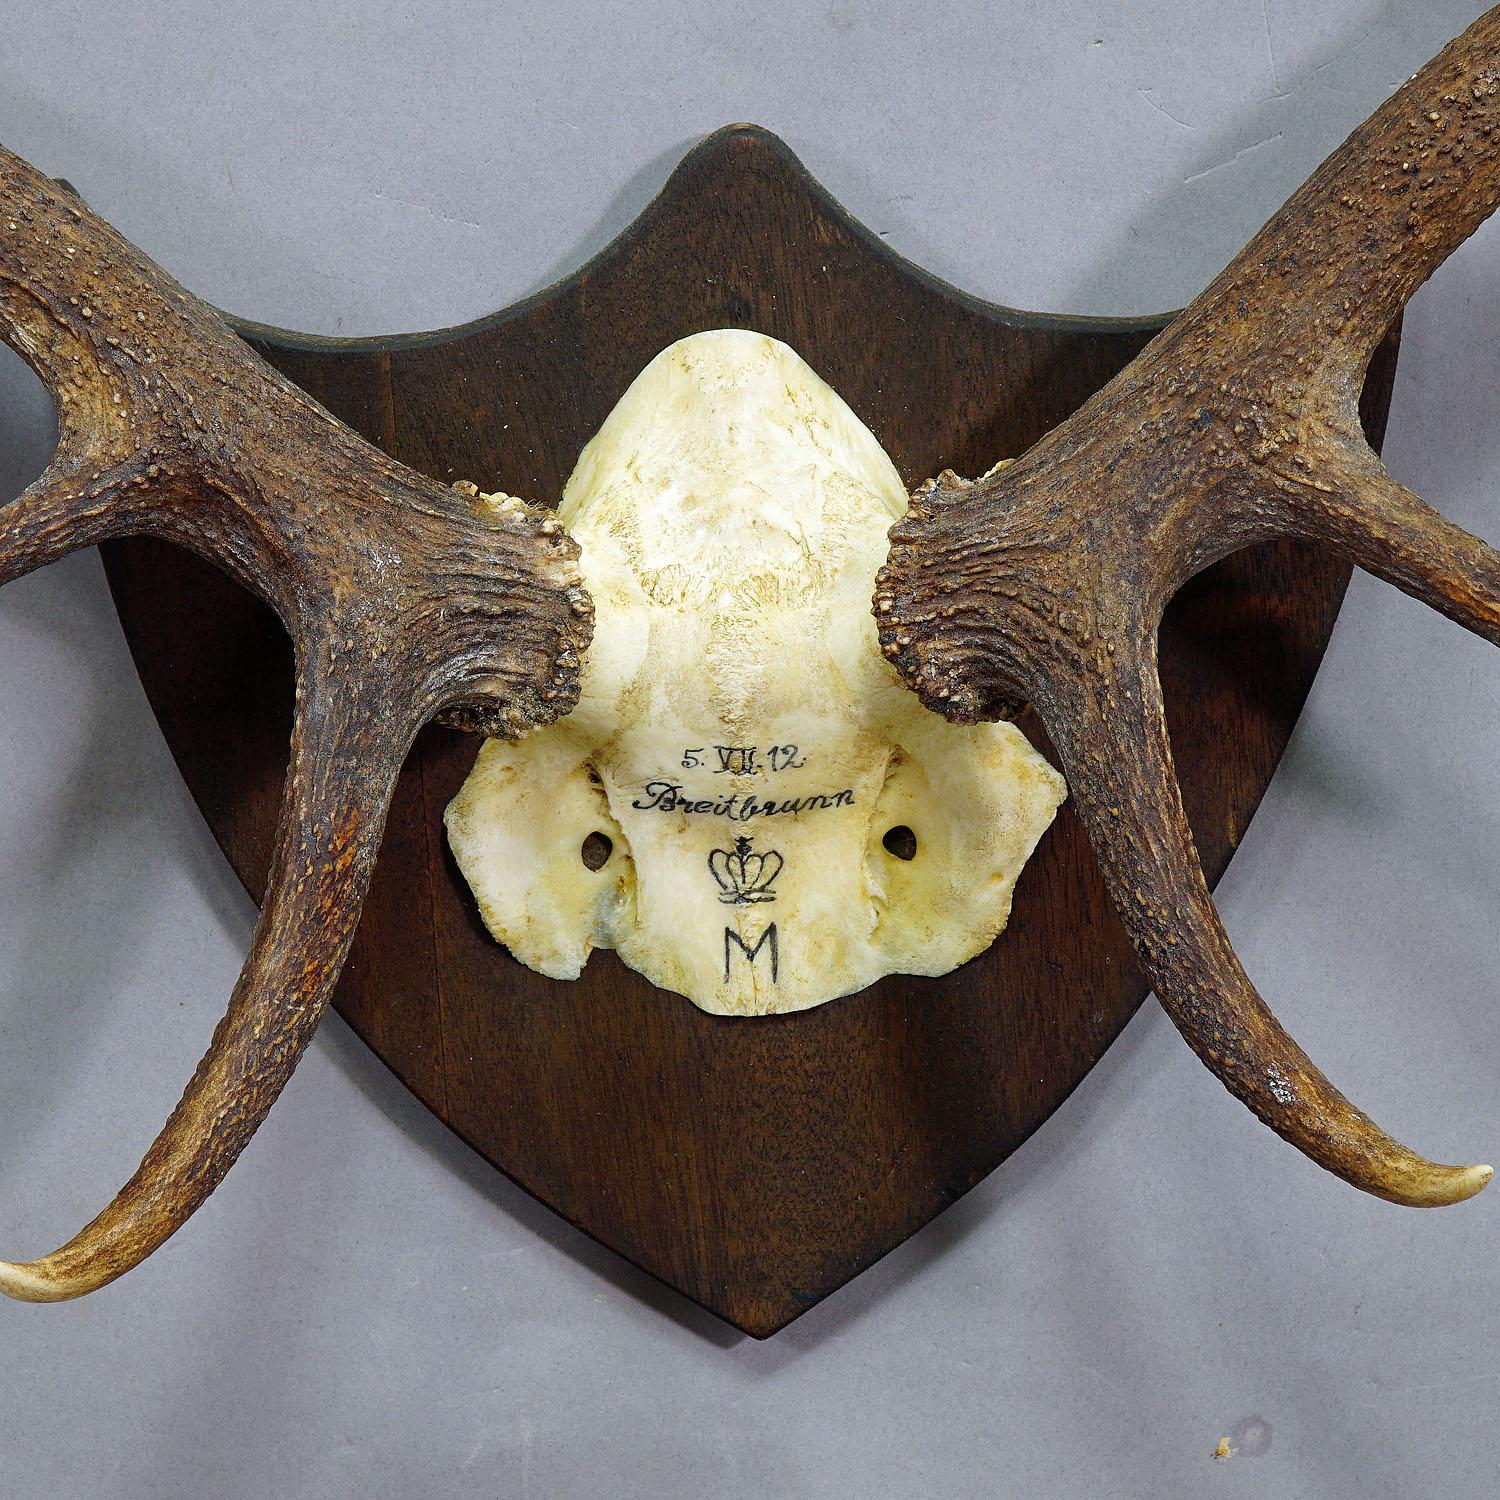 Rustic Antique Black Forest Deer Trophy from Salem, Germany, Breitenbrunn, 1912